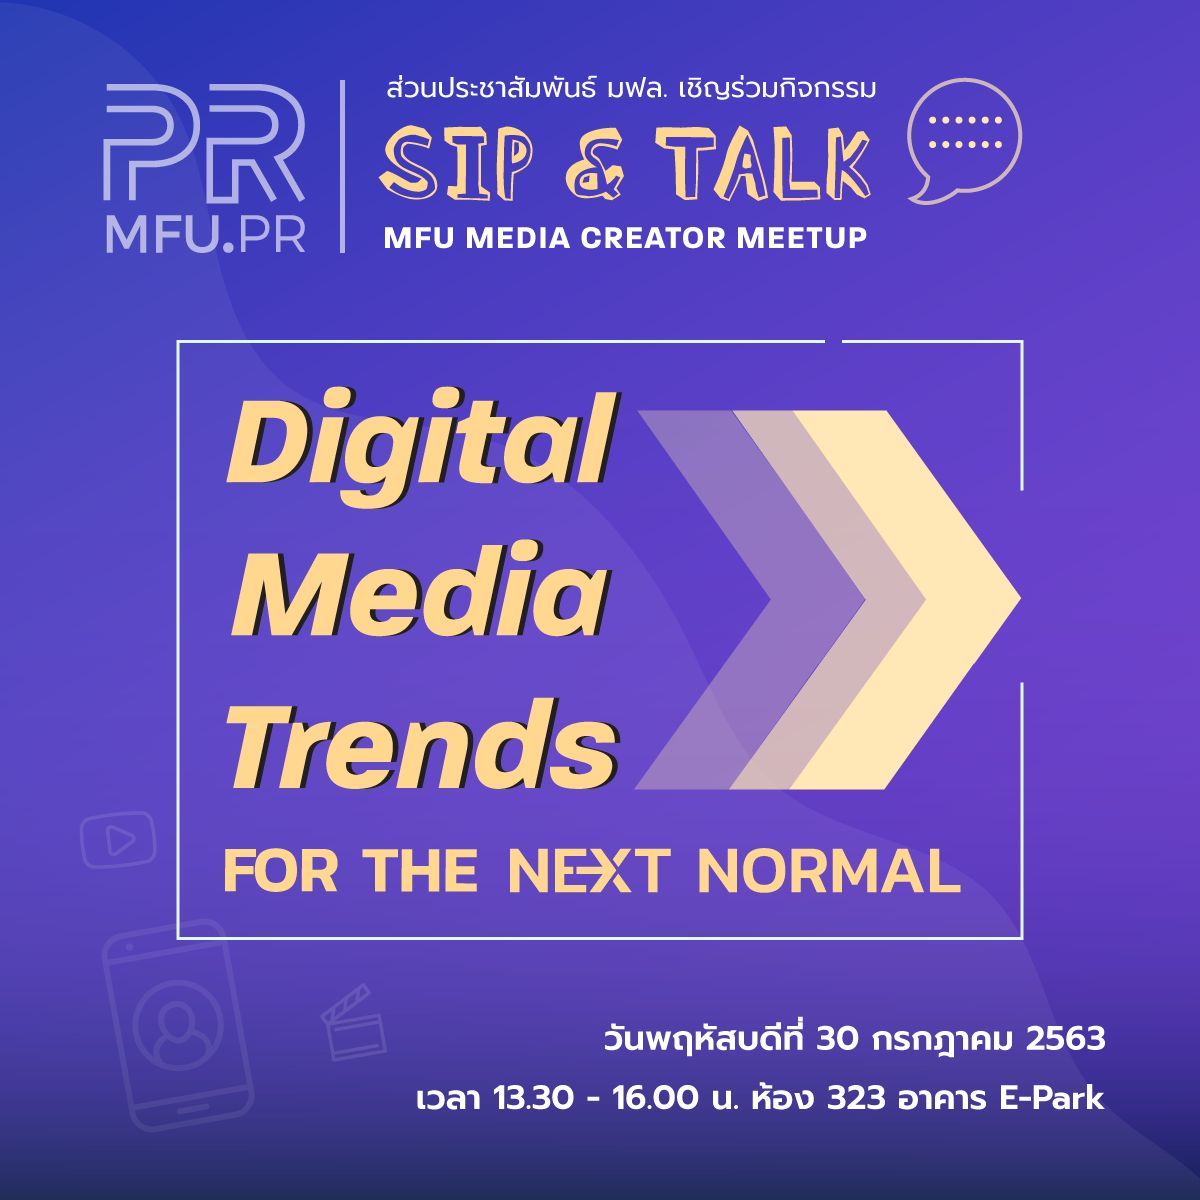 ส่วนประชาสัมพันธ์ จะจัดกิจกรรม SIP & TALK : MFU MEDIA CREATOR MEETUP  หัวข้อ ‘Digital Media Trends for the Next Normal’ 30 กค.นี้